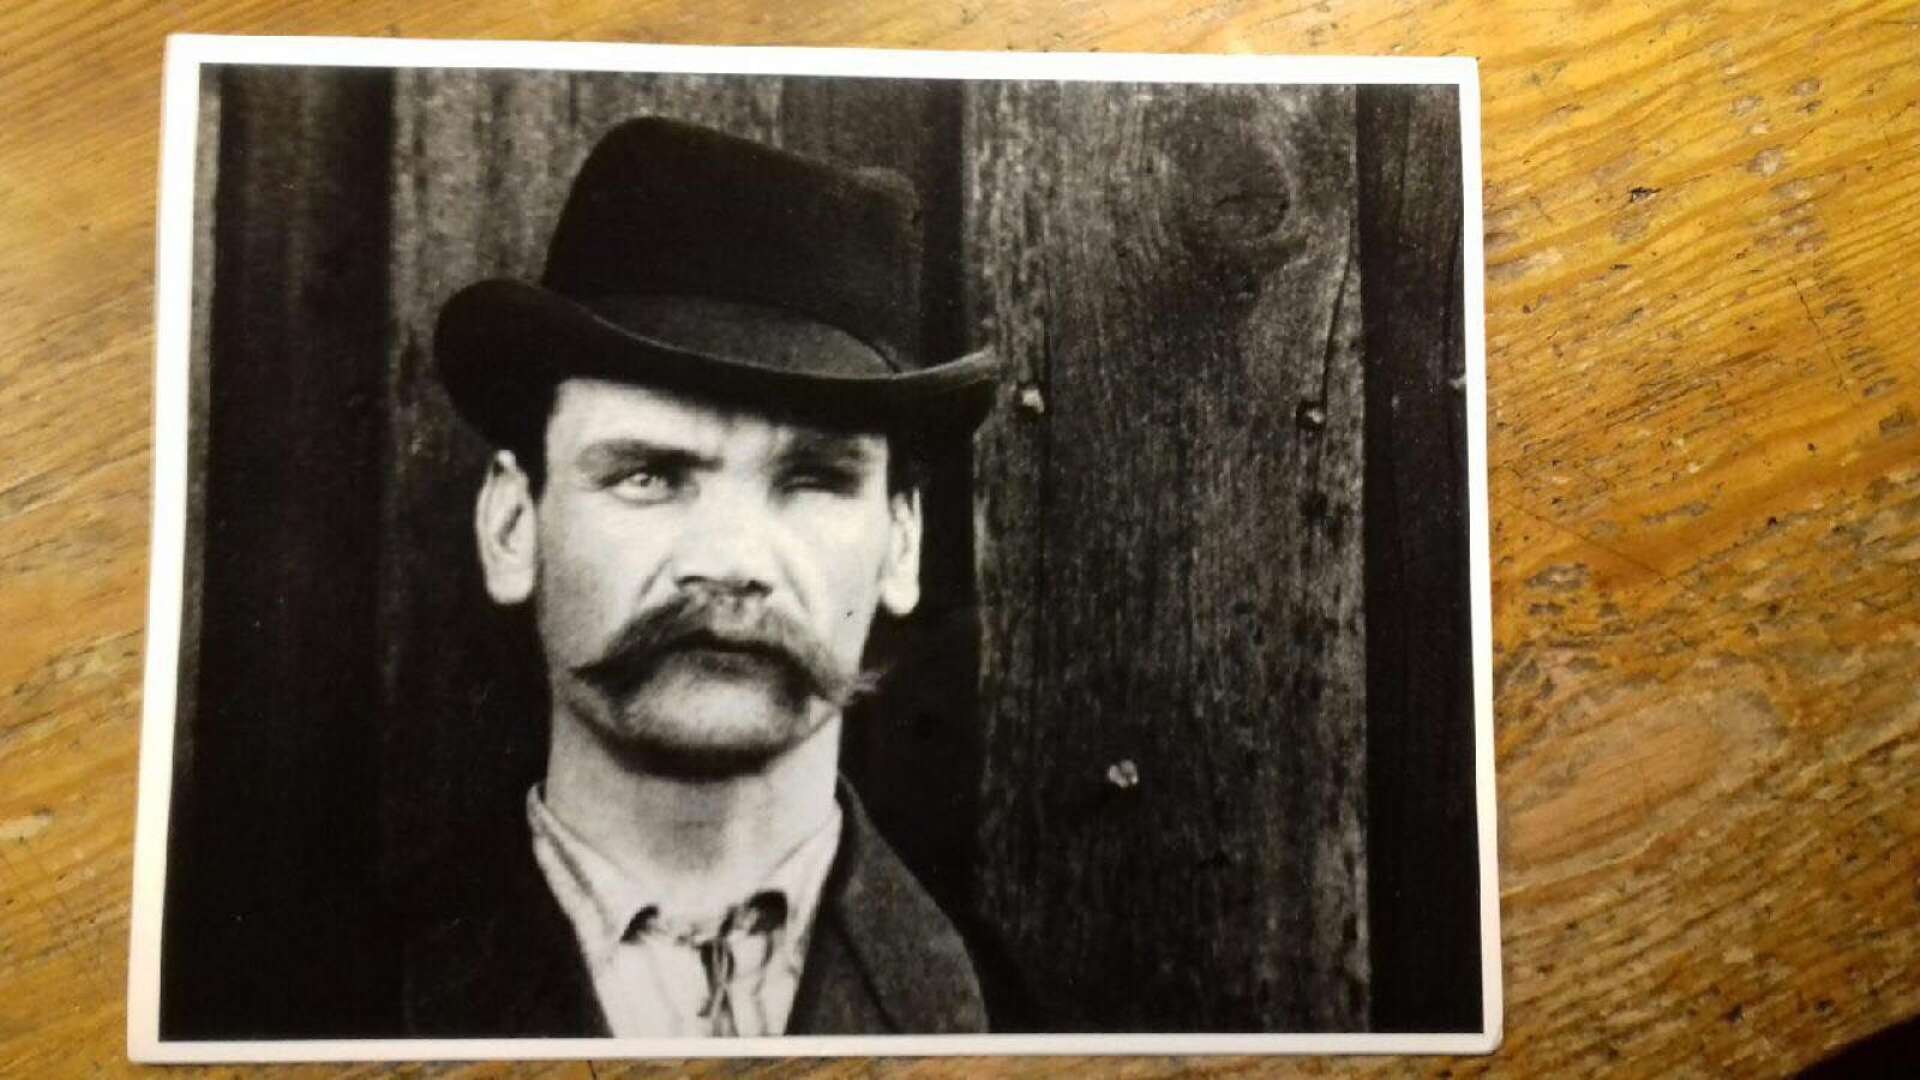 På fotot från 1896 ses ögonskadade gruvarbetaren Erik Johan Rahm. Hans ögonskada beror sannolikt på en olycka i gruvan. Bilden är med i filmen och fanns ursprungligen på en gruppbild som Mats Holmstrand fotograferat av för att visa de enskilda gruvarbetarna.